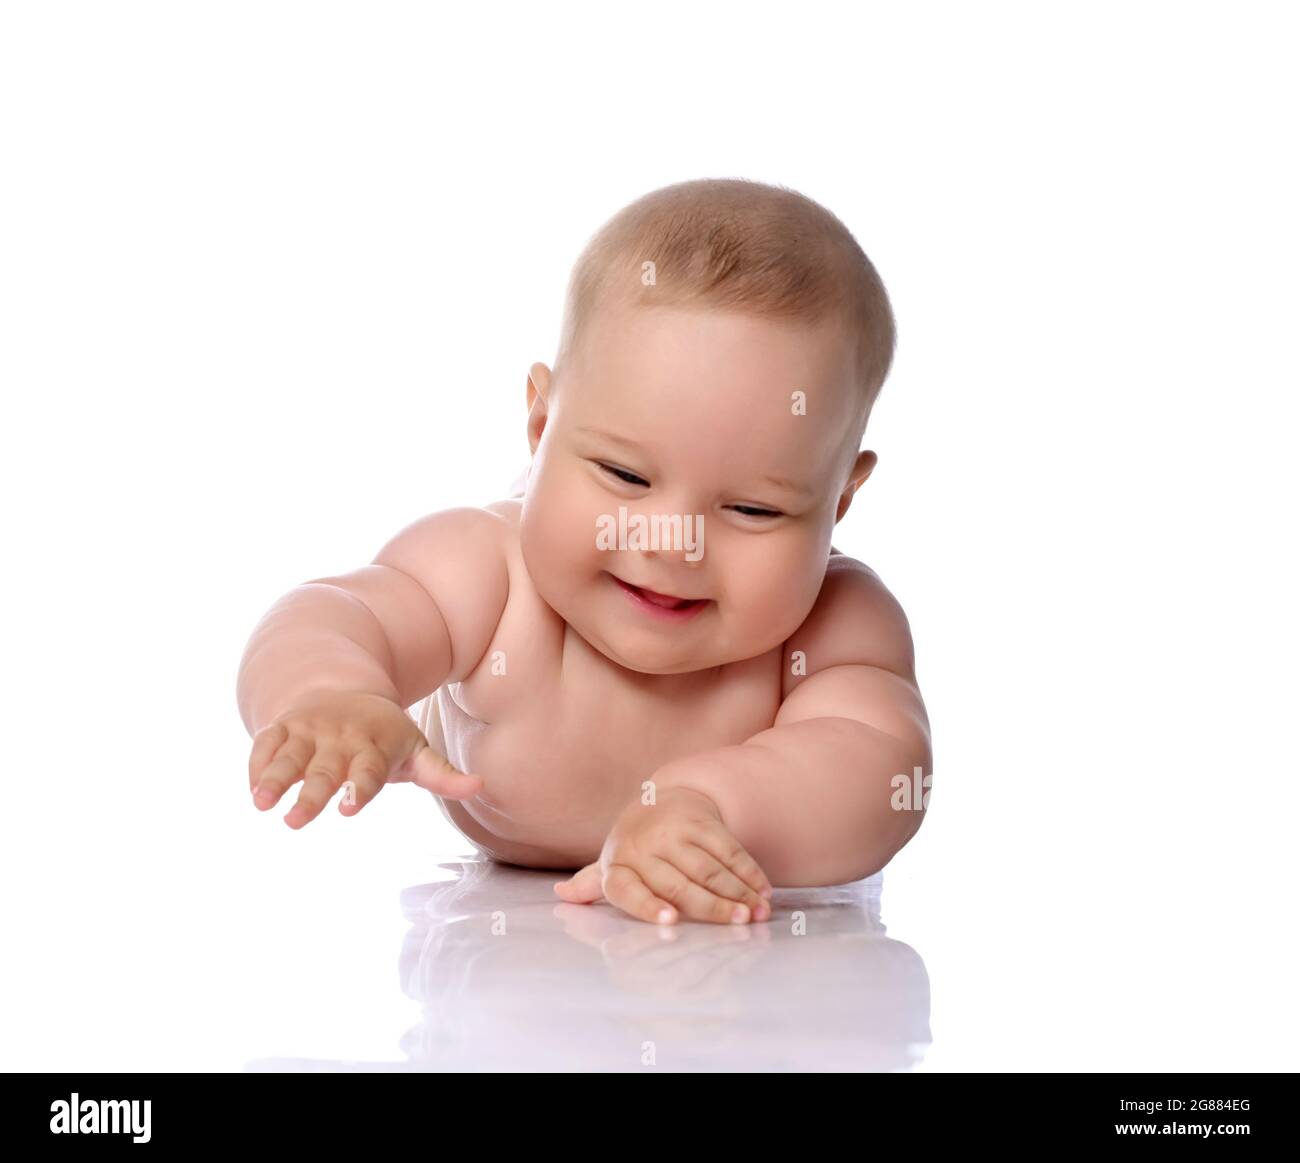 Lächelnd, lachend Kleinkind Baby Mädchen Kind in Windel liegt auf ihrem Bauch mit der Hand nach oben und schlagt auf den Boden Stockfoto